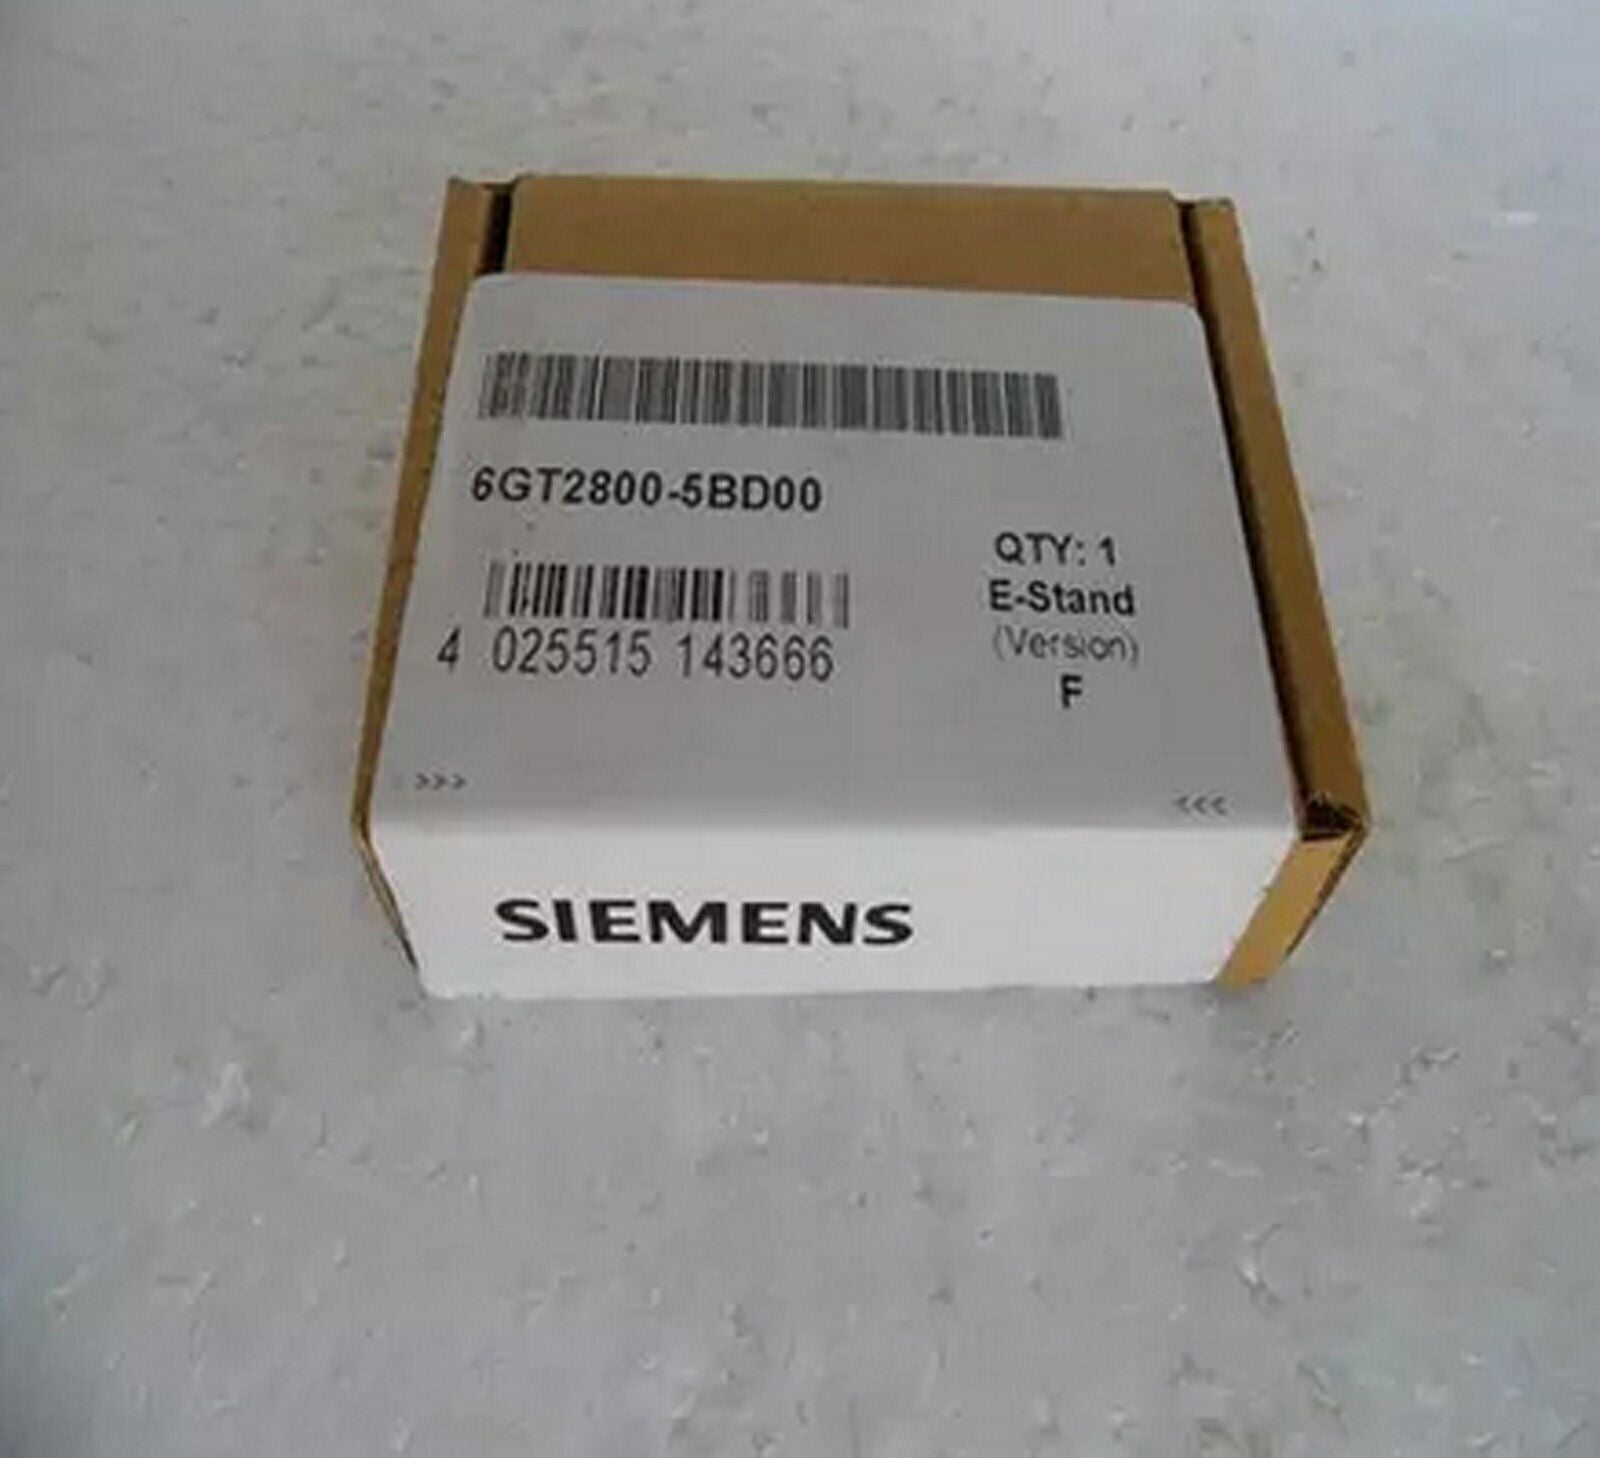 new   Siemens 6GT2800-5BD00 6GT2800-5BD00 One year